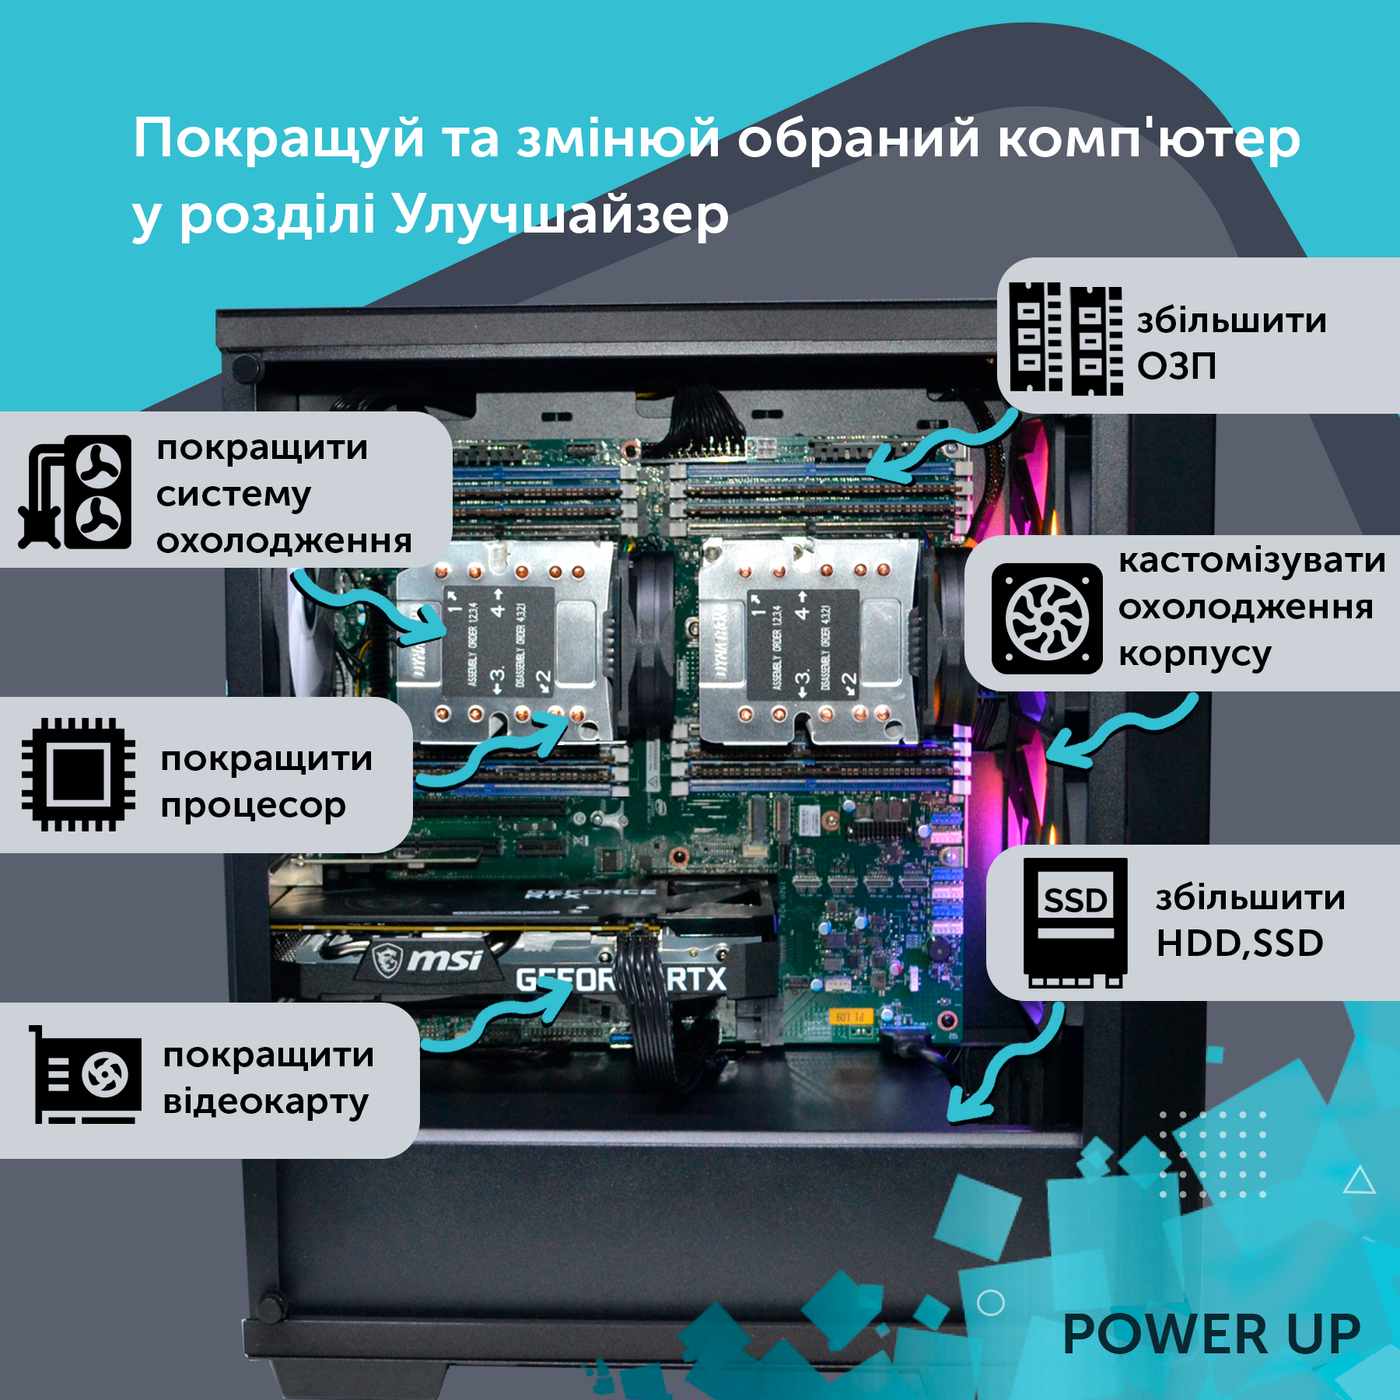 Робоча станція PowerUp Desktop #176 Core i5 13600K/64GB/HDD 1TB/SSD 1TB/GeForce RTX 3060 12GB